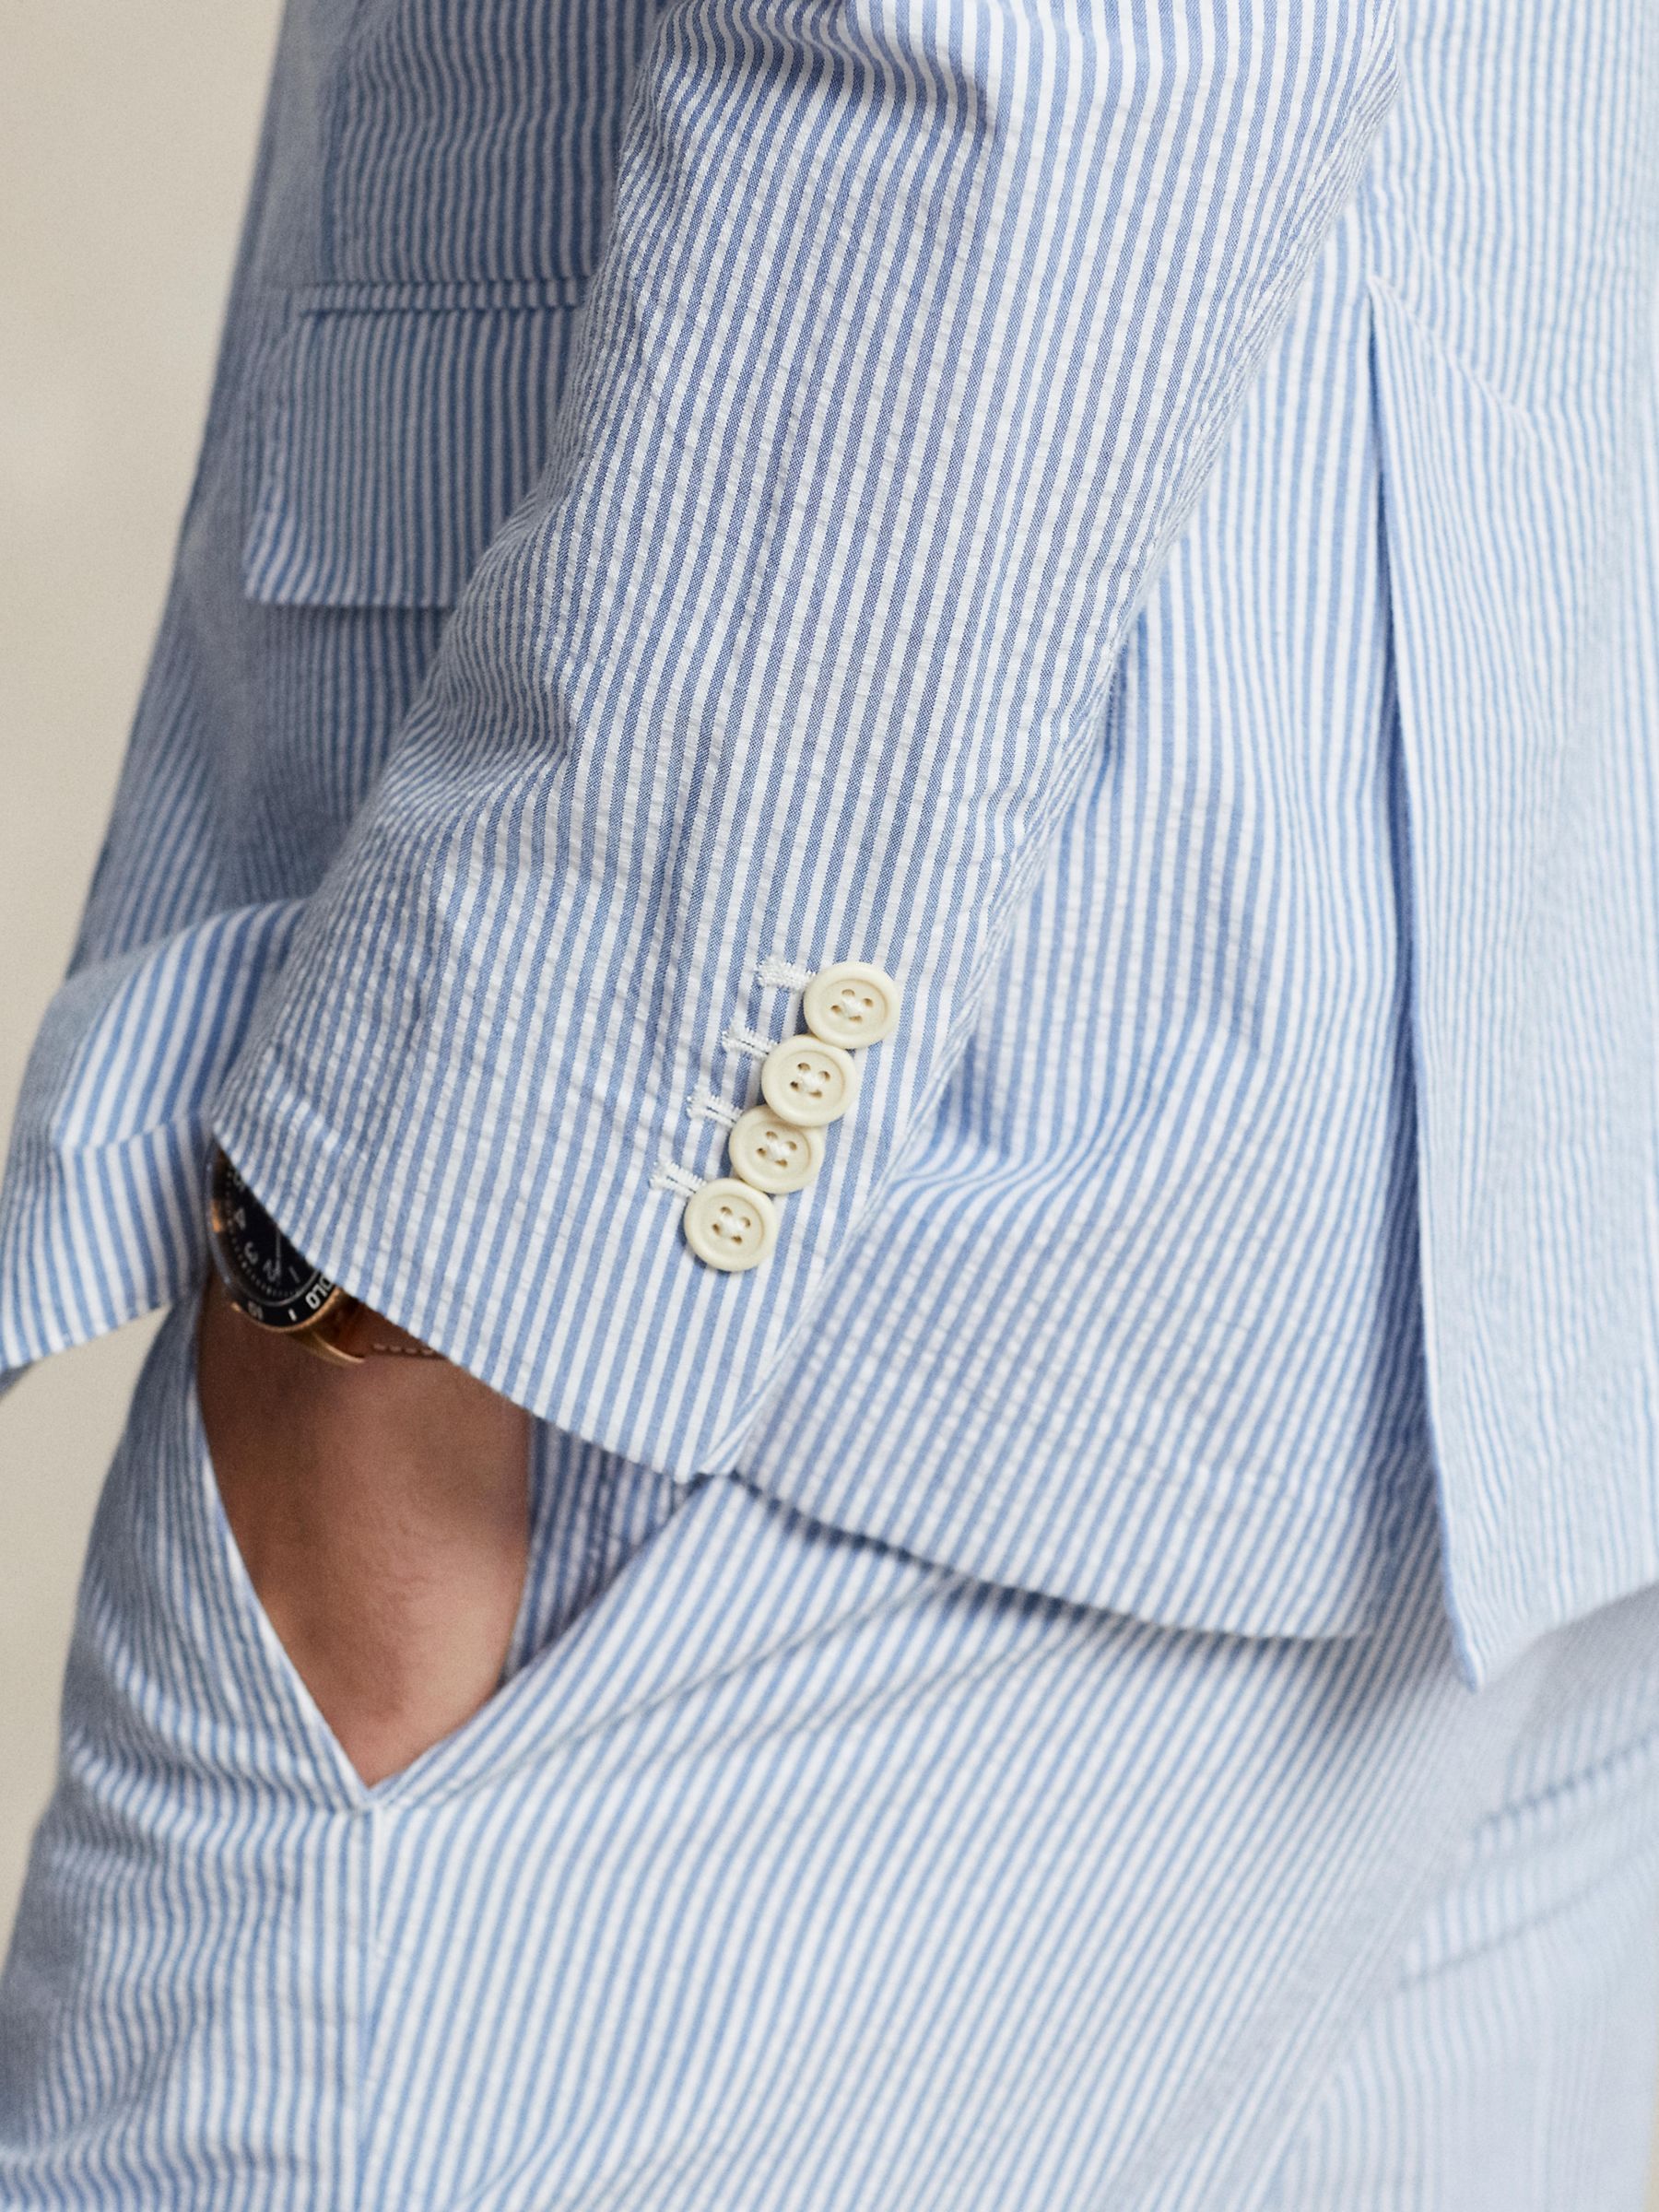 Ralph Lauren Soft Modern Seersucker Suit Jacket, Bright Blue/White, S